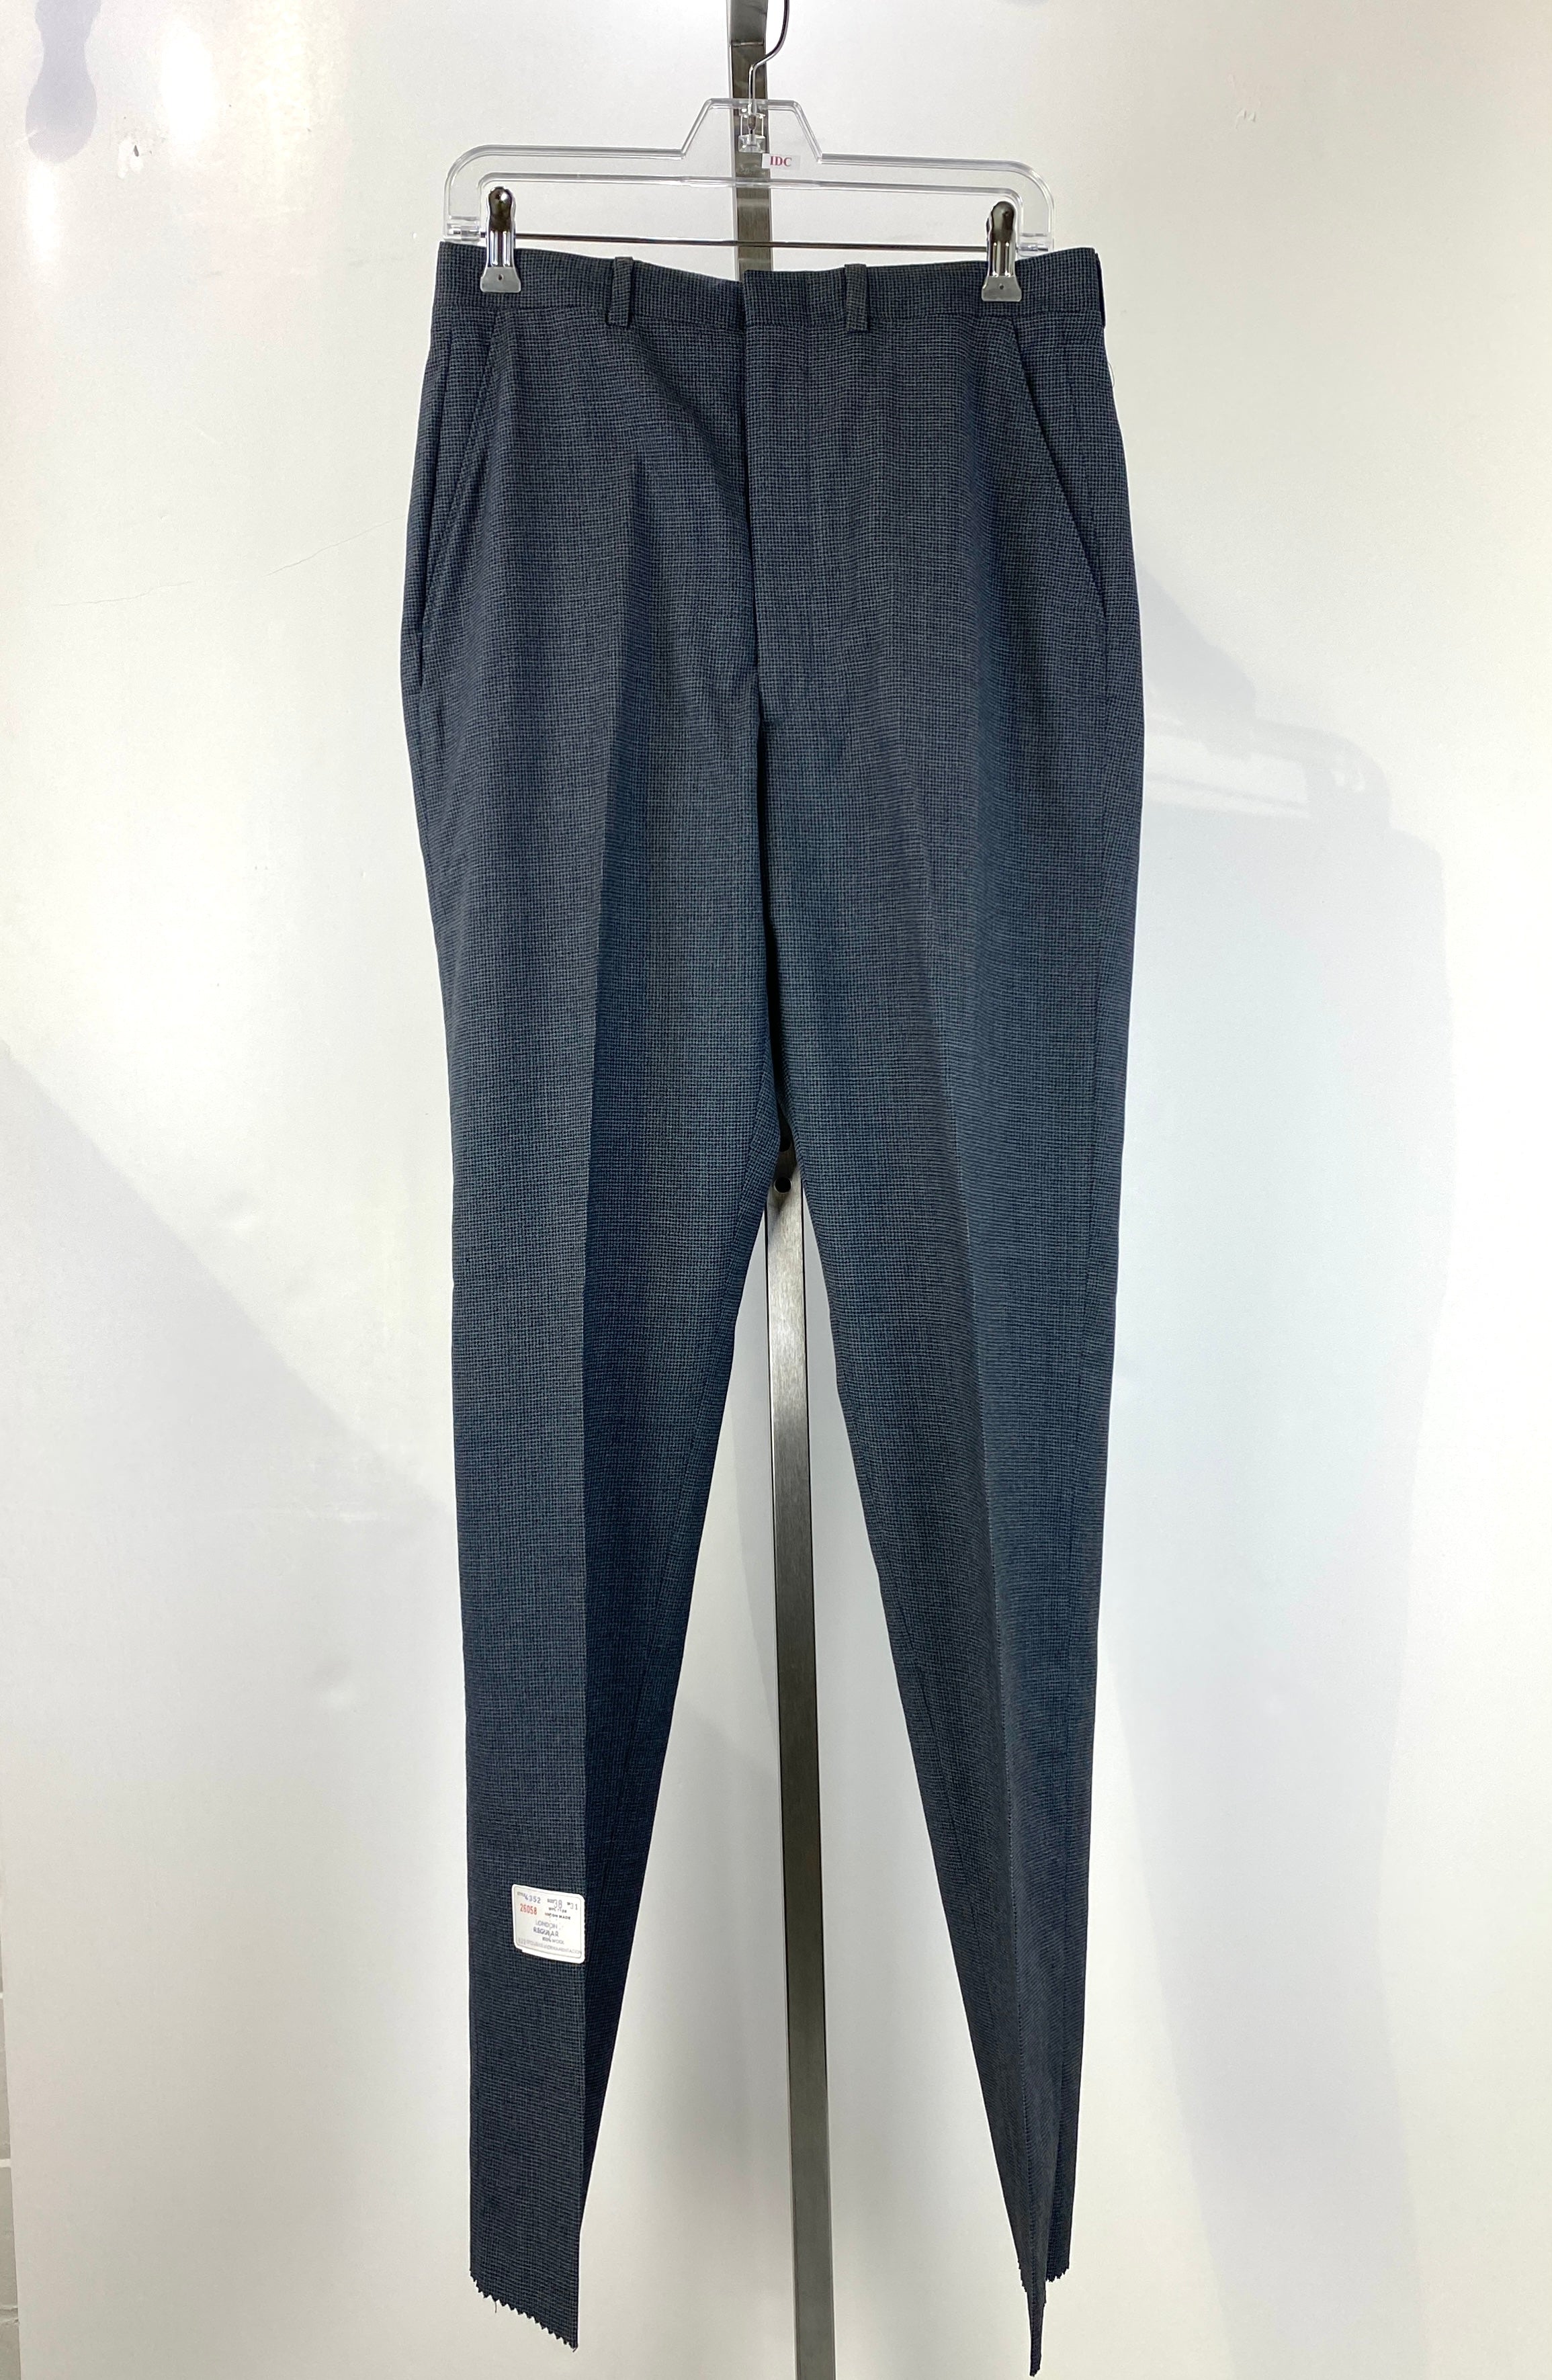 Vintage 1960s Deadstock Blue-Grey Straight-Leg Slacks, Men's Wool